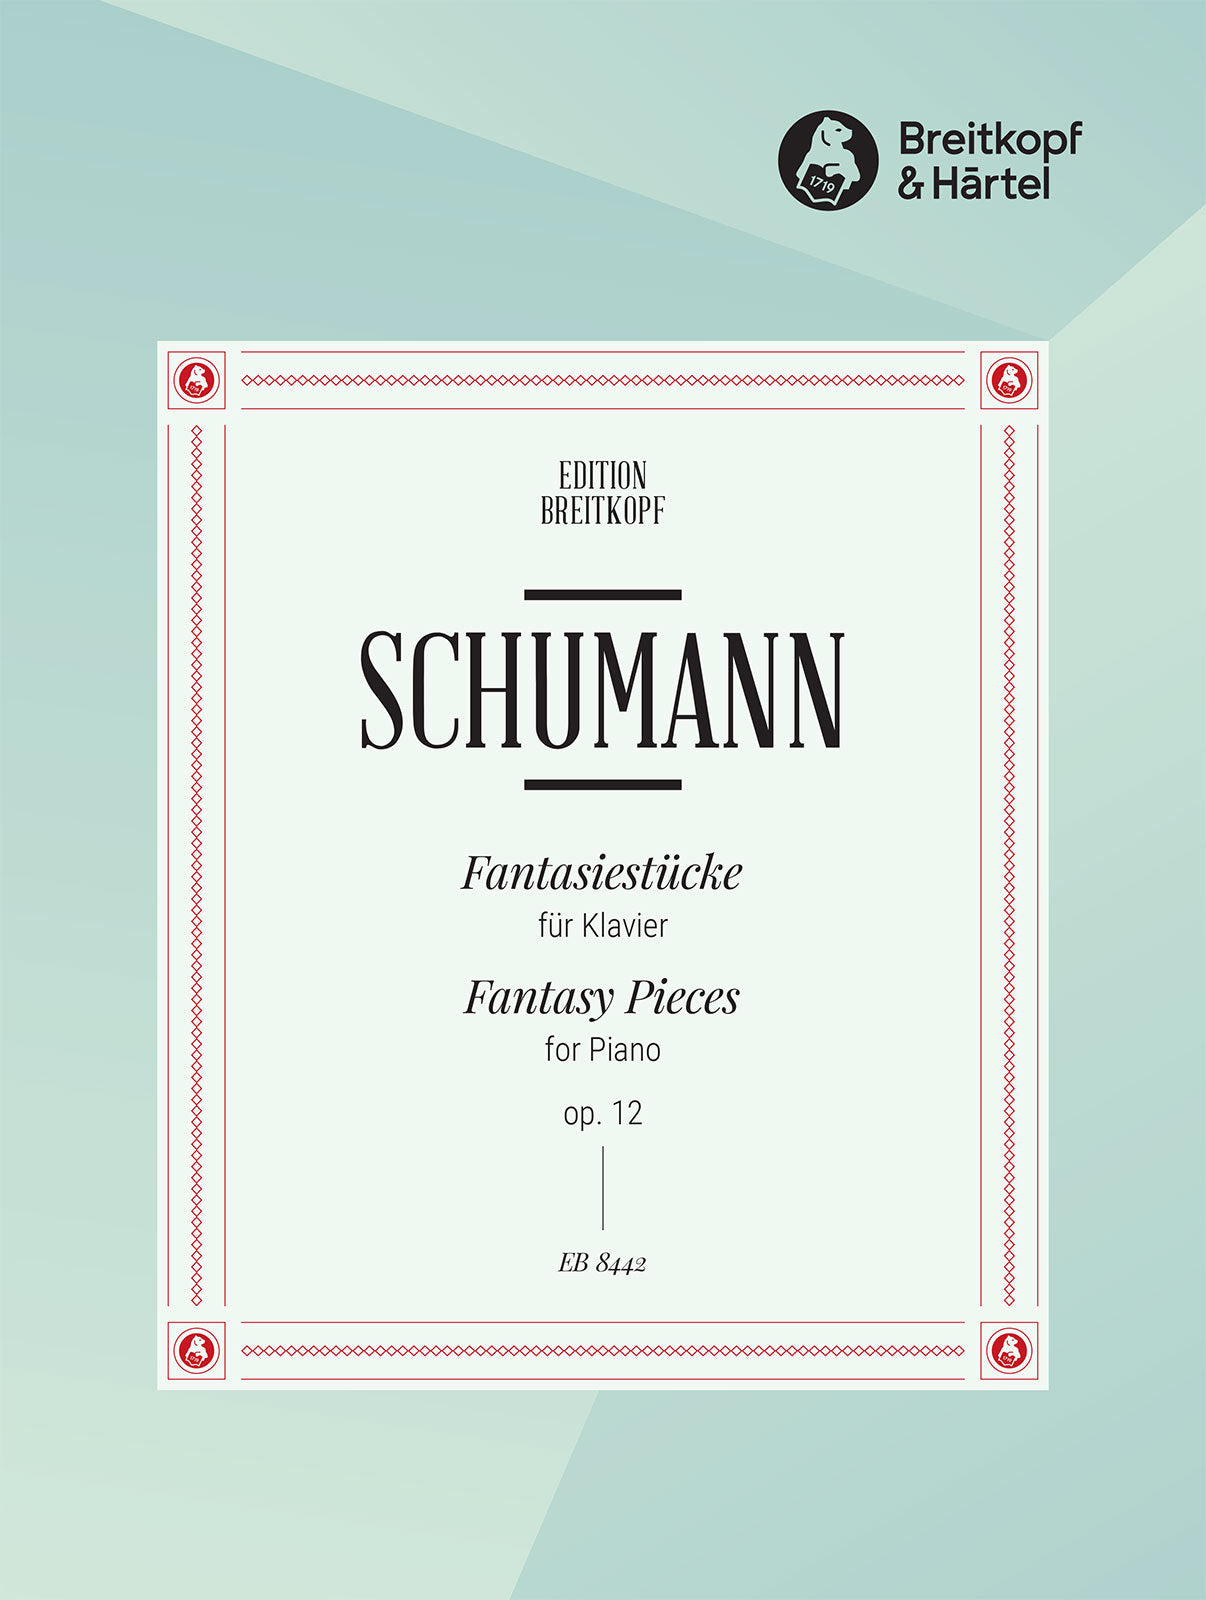 Schumann: Fantasiestücke, Op. 12